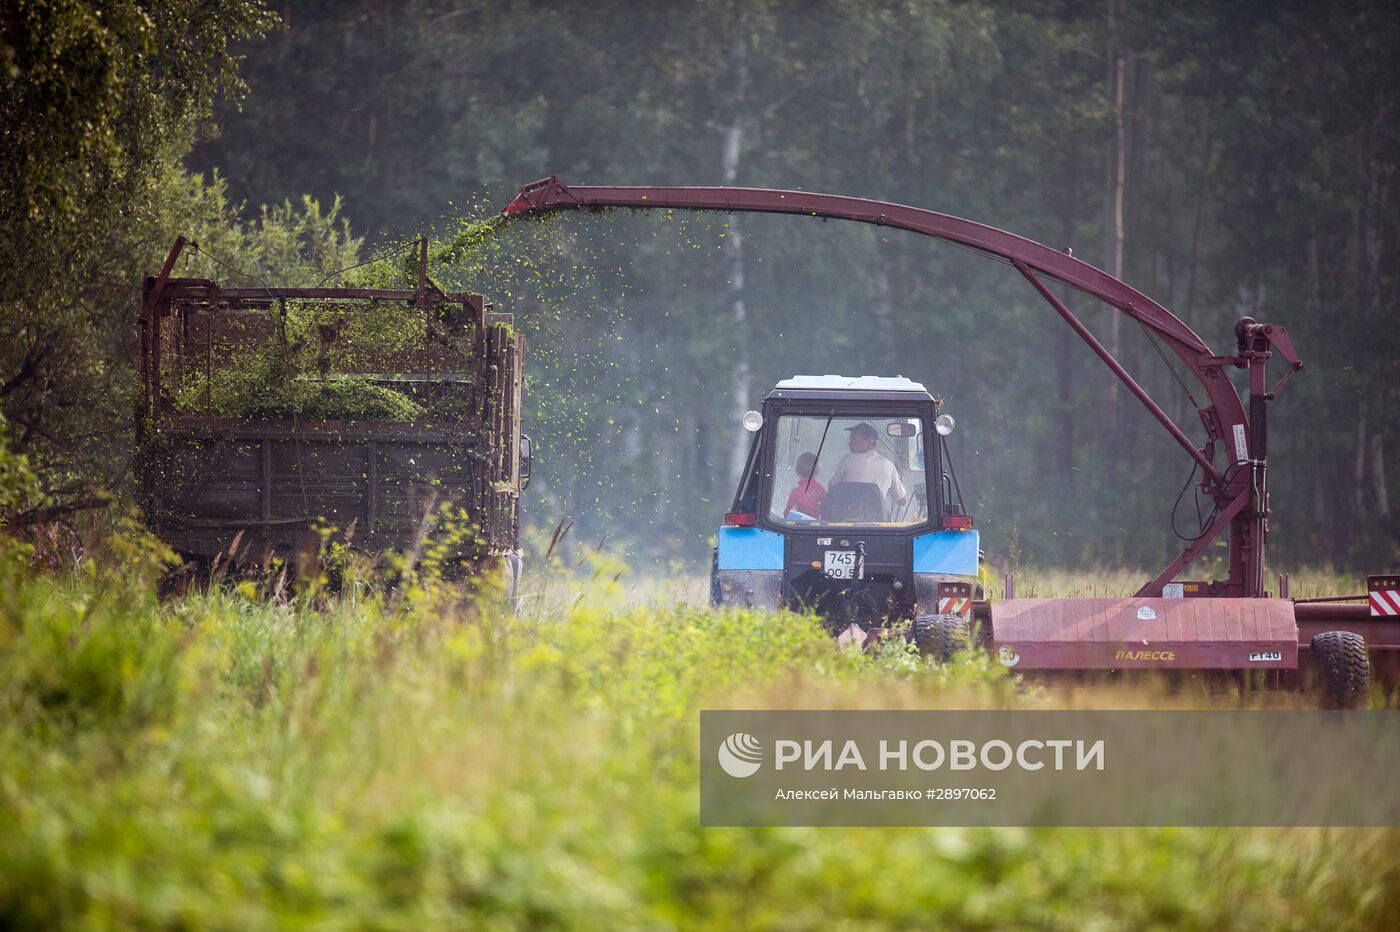 Работа сельскохозяйственной фермы в селе Ложниково Омской области